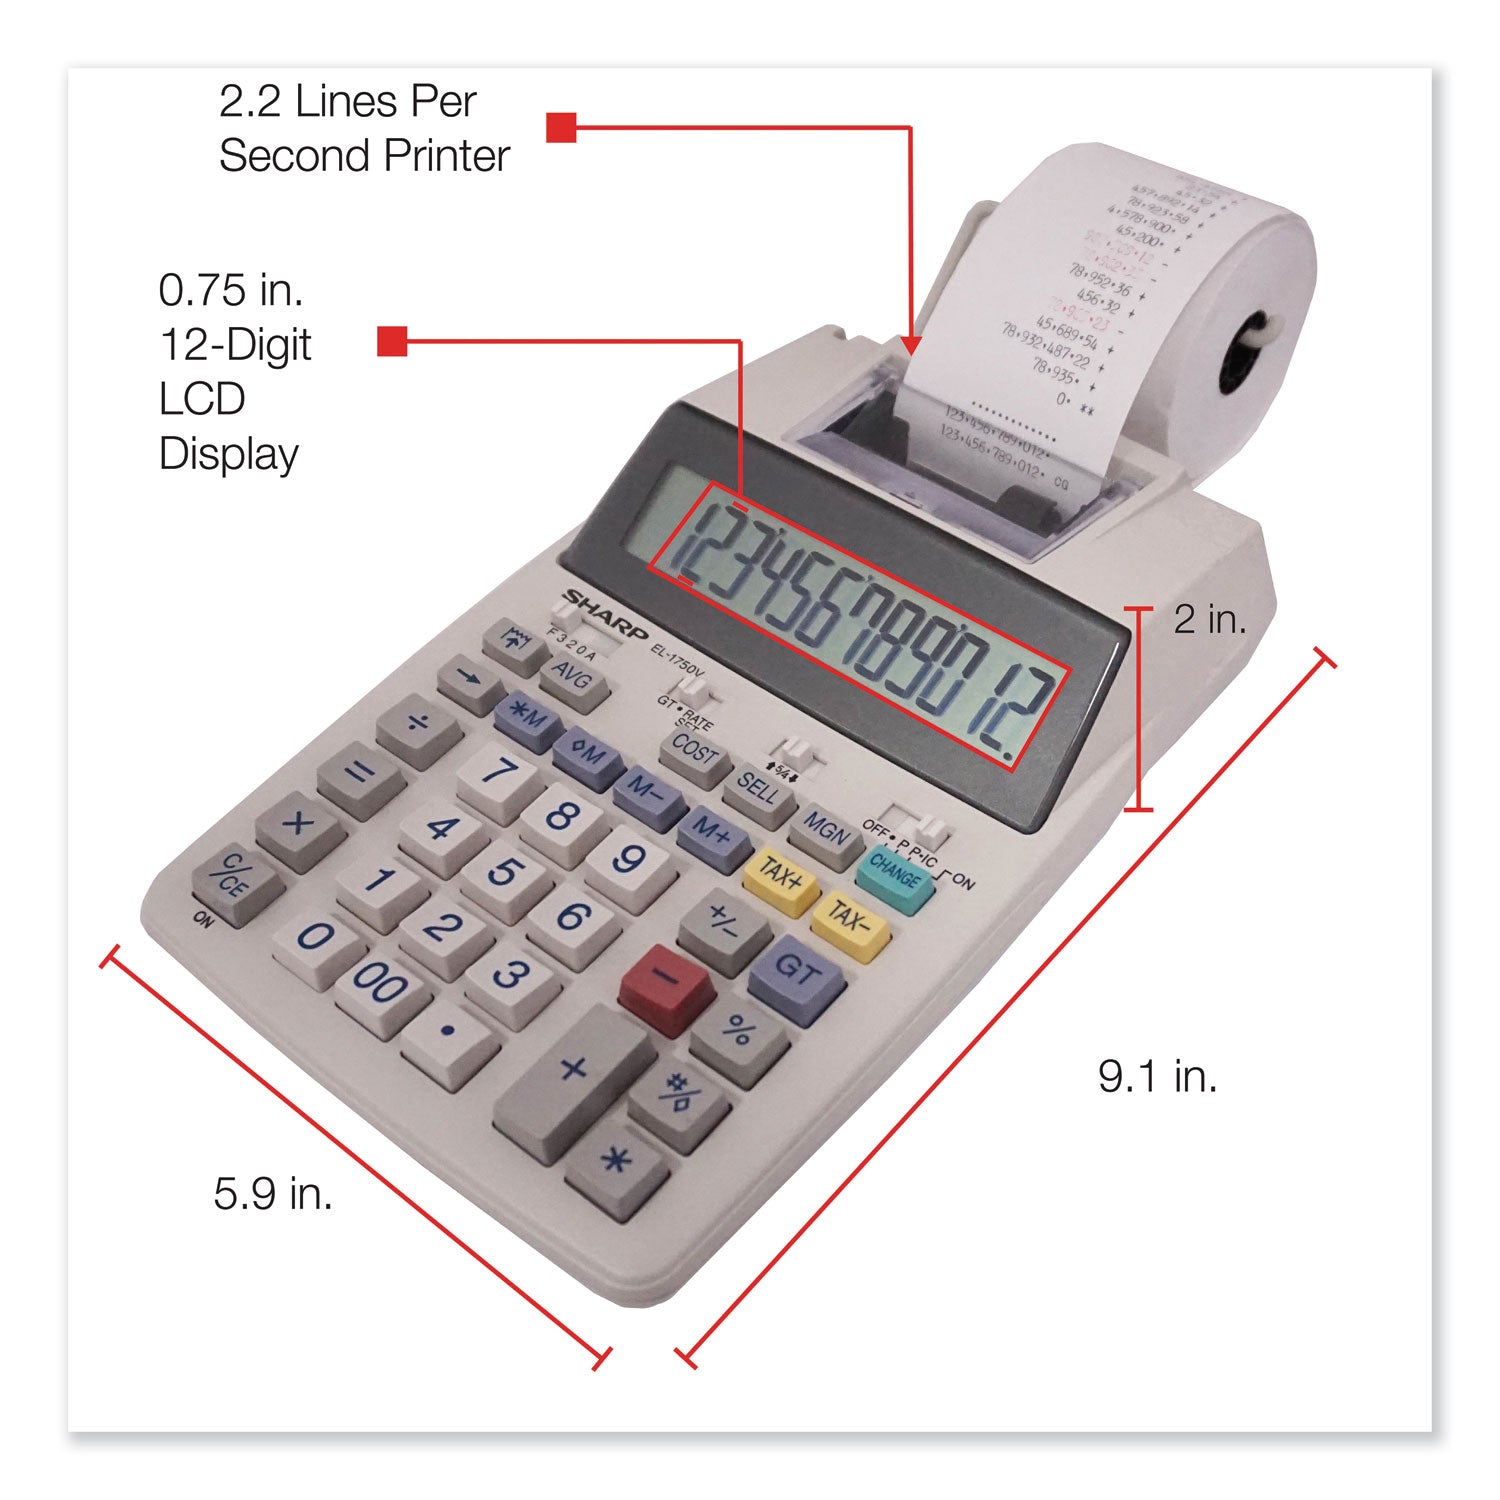 EL-1750V Two-Color Printing Calculator, Black/Red Print, 2 Lines/Sec - 